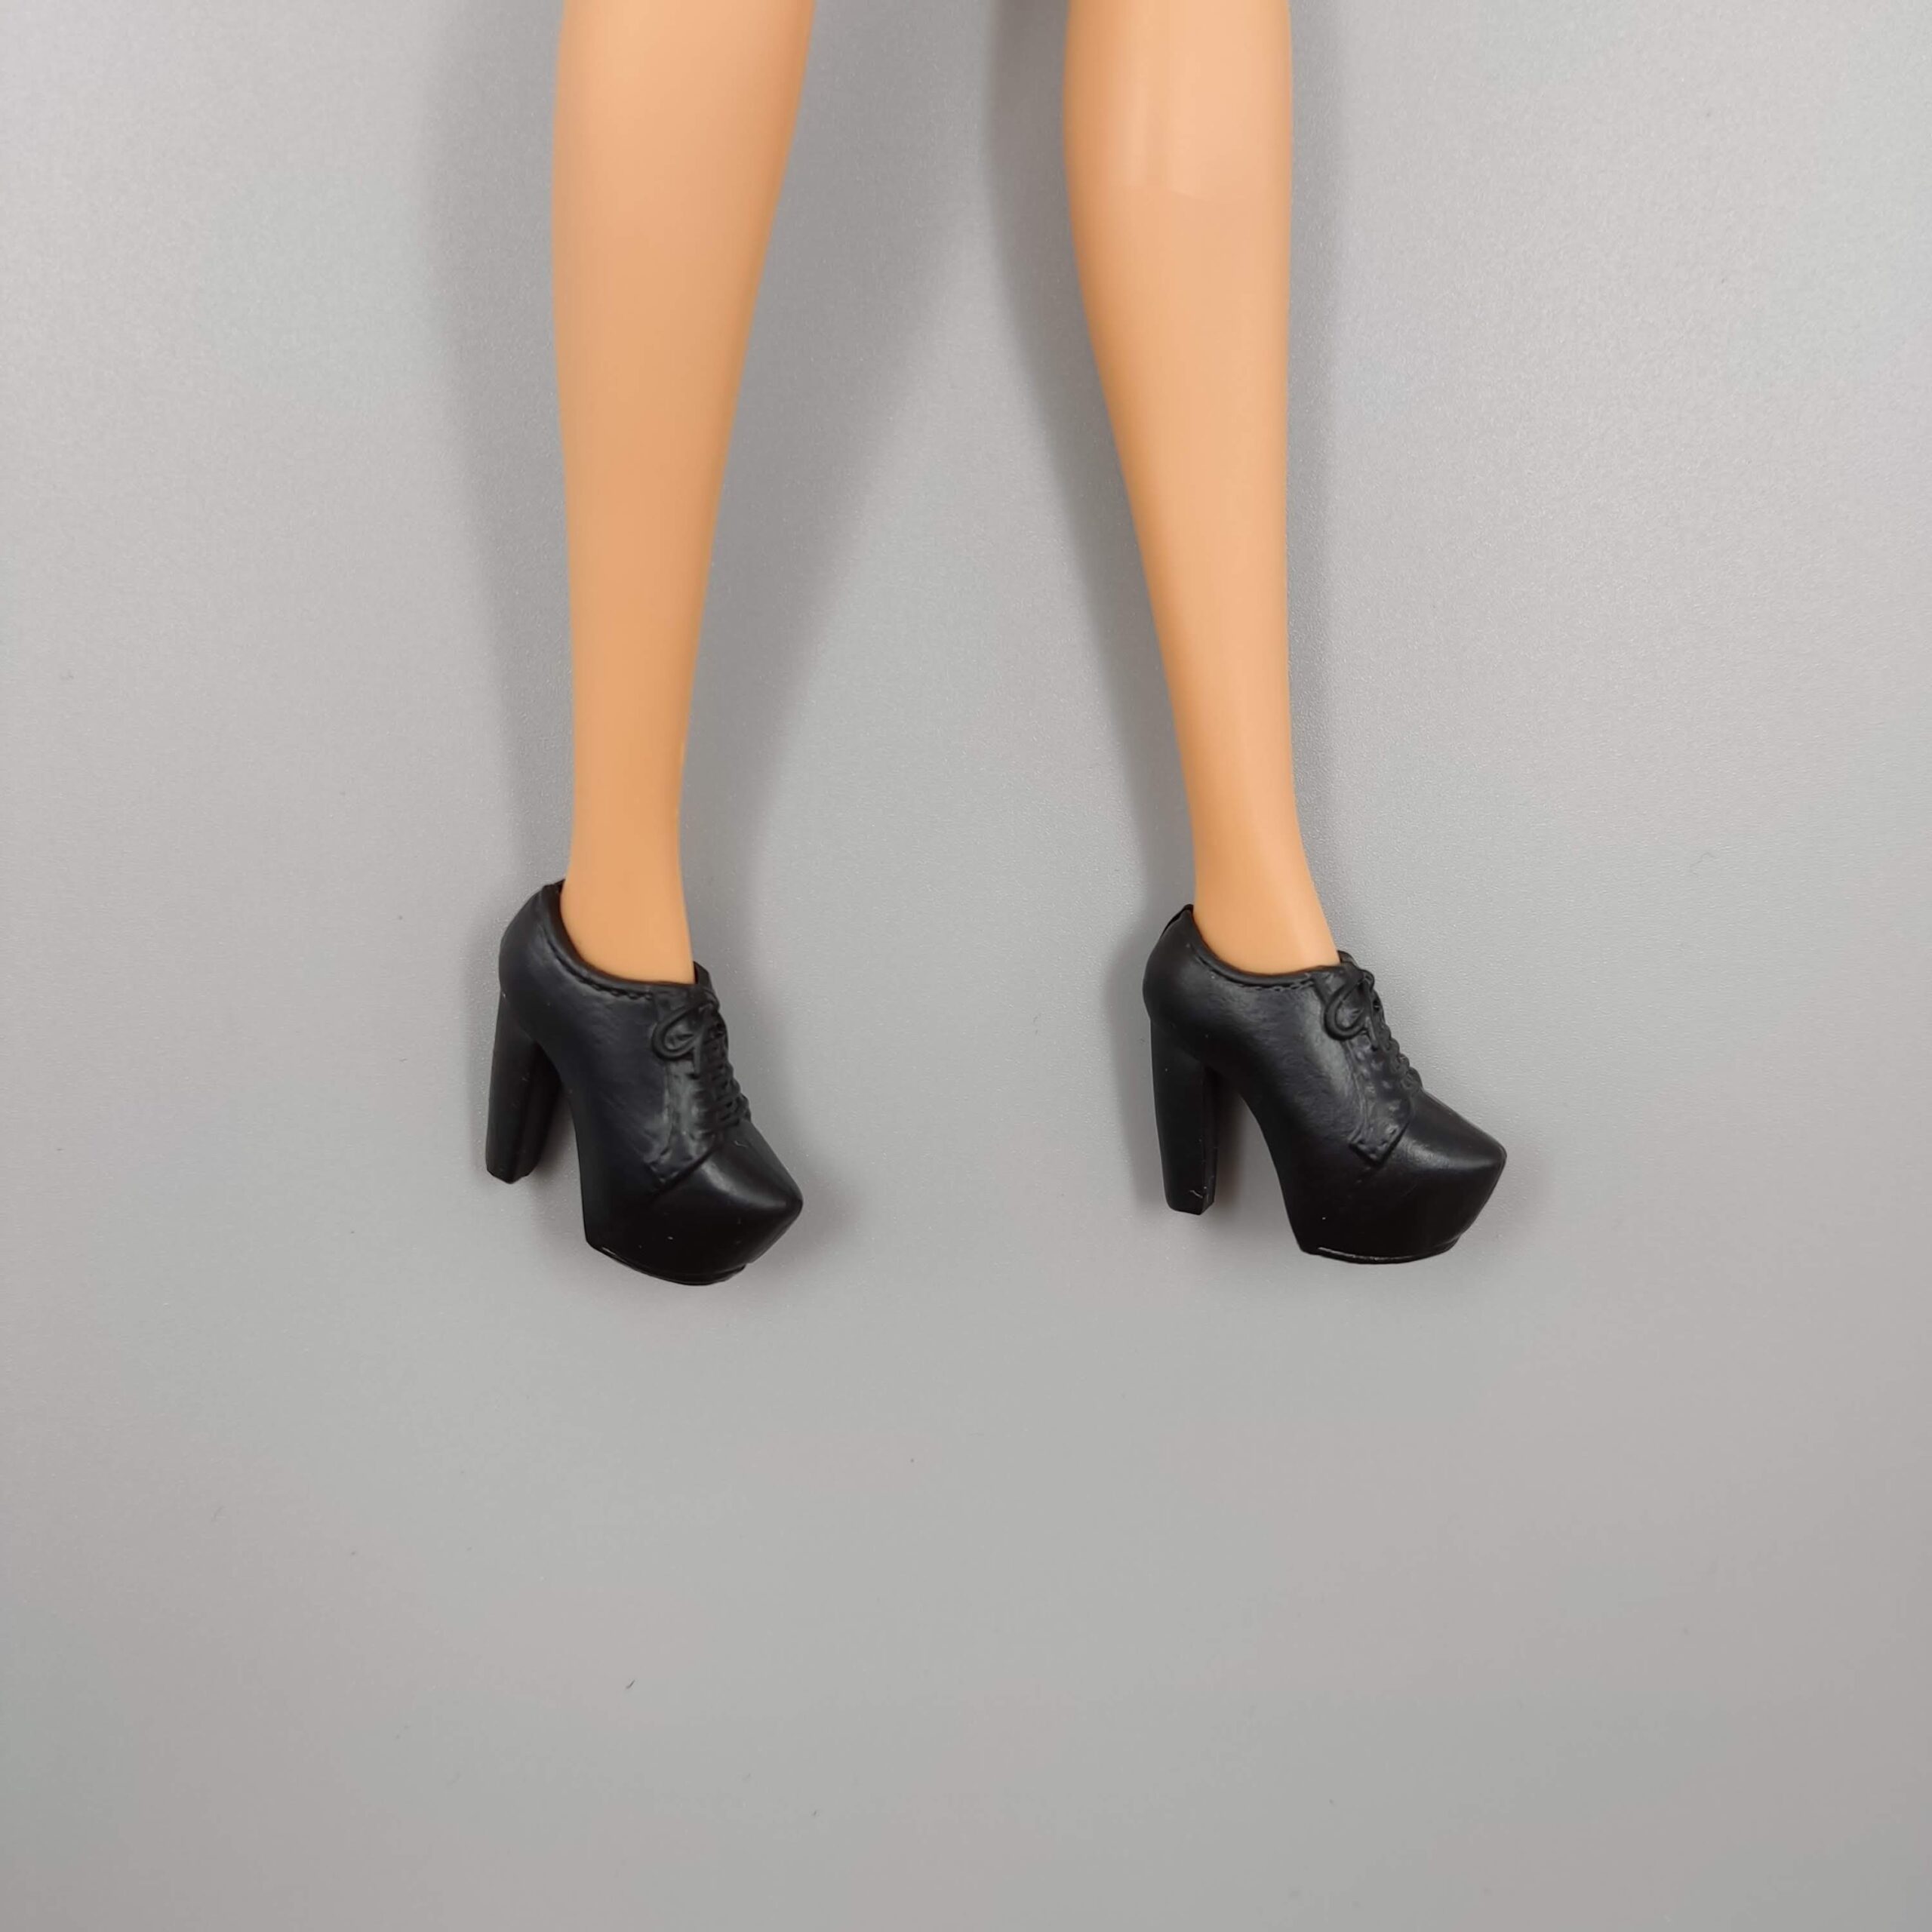 Barbie shoes, Barbie regular shoes - DailyDoll Shop